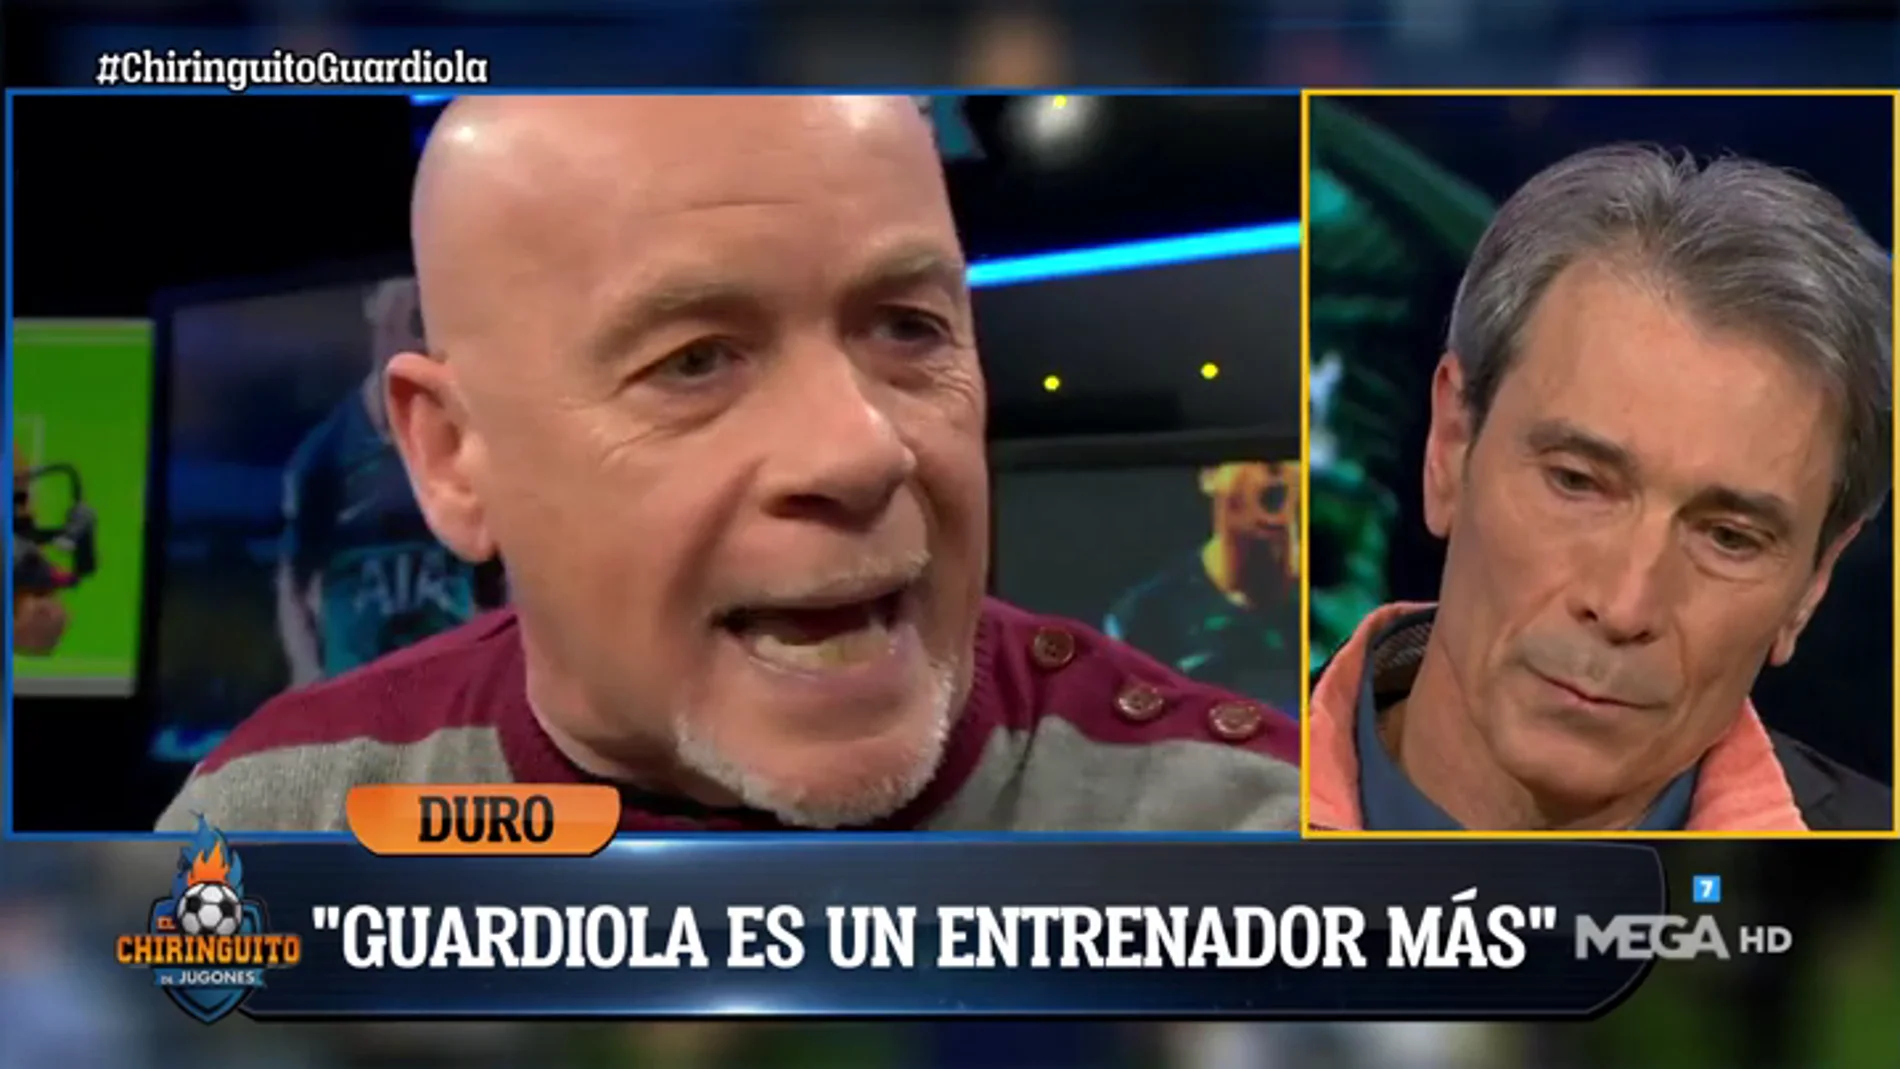 Alfredo Duro: "Adiós al mito de Guardiola. Se ha acabado por completo. Bye Bye"